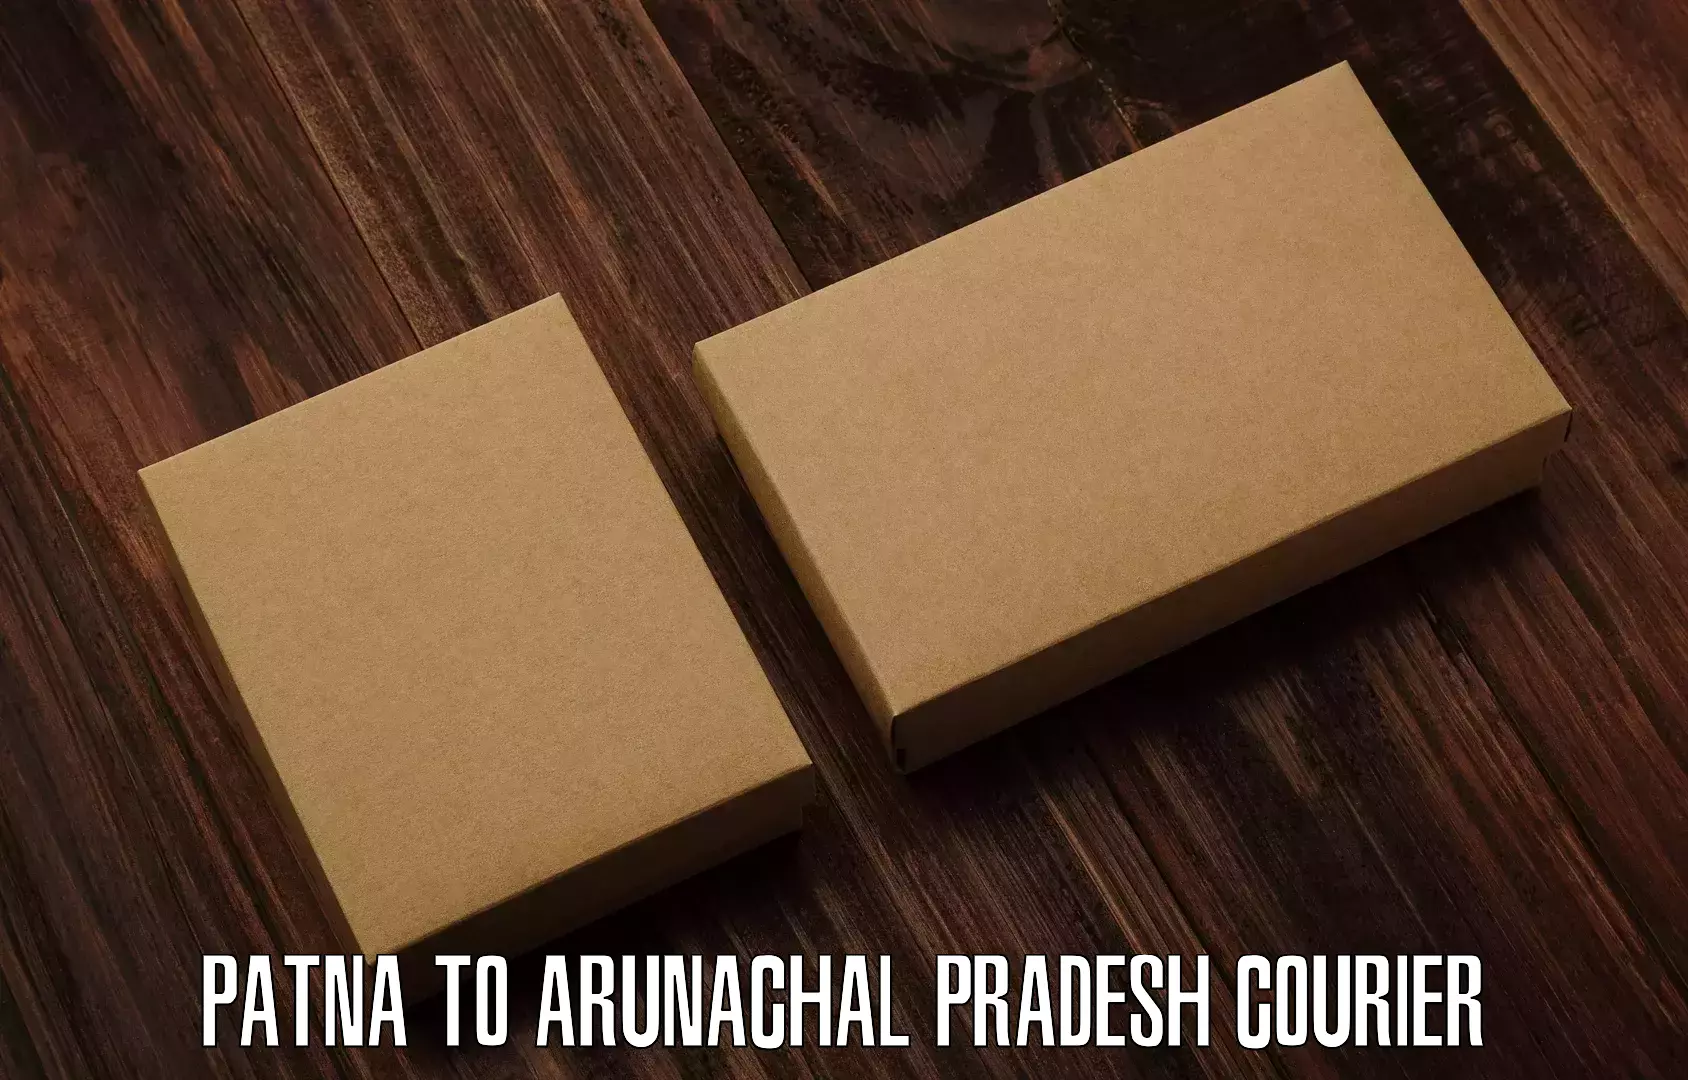 Customer-oriented courier services Patna to Arunachal Pradesh